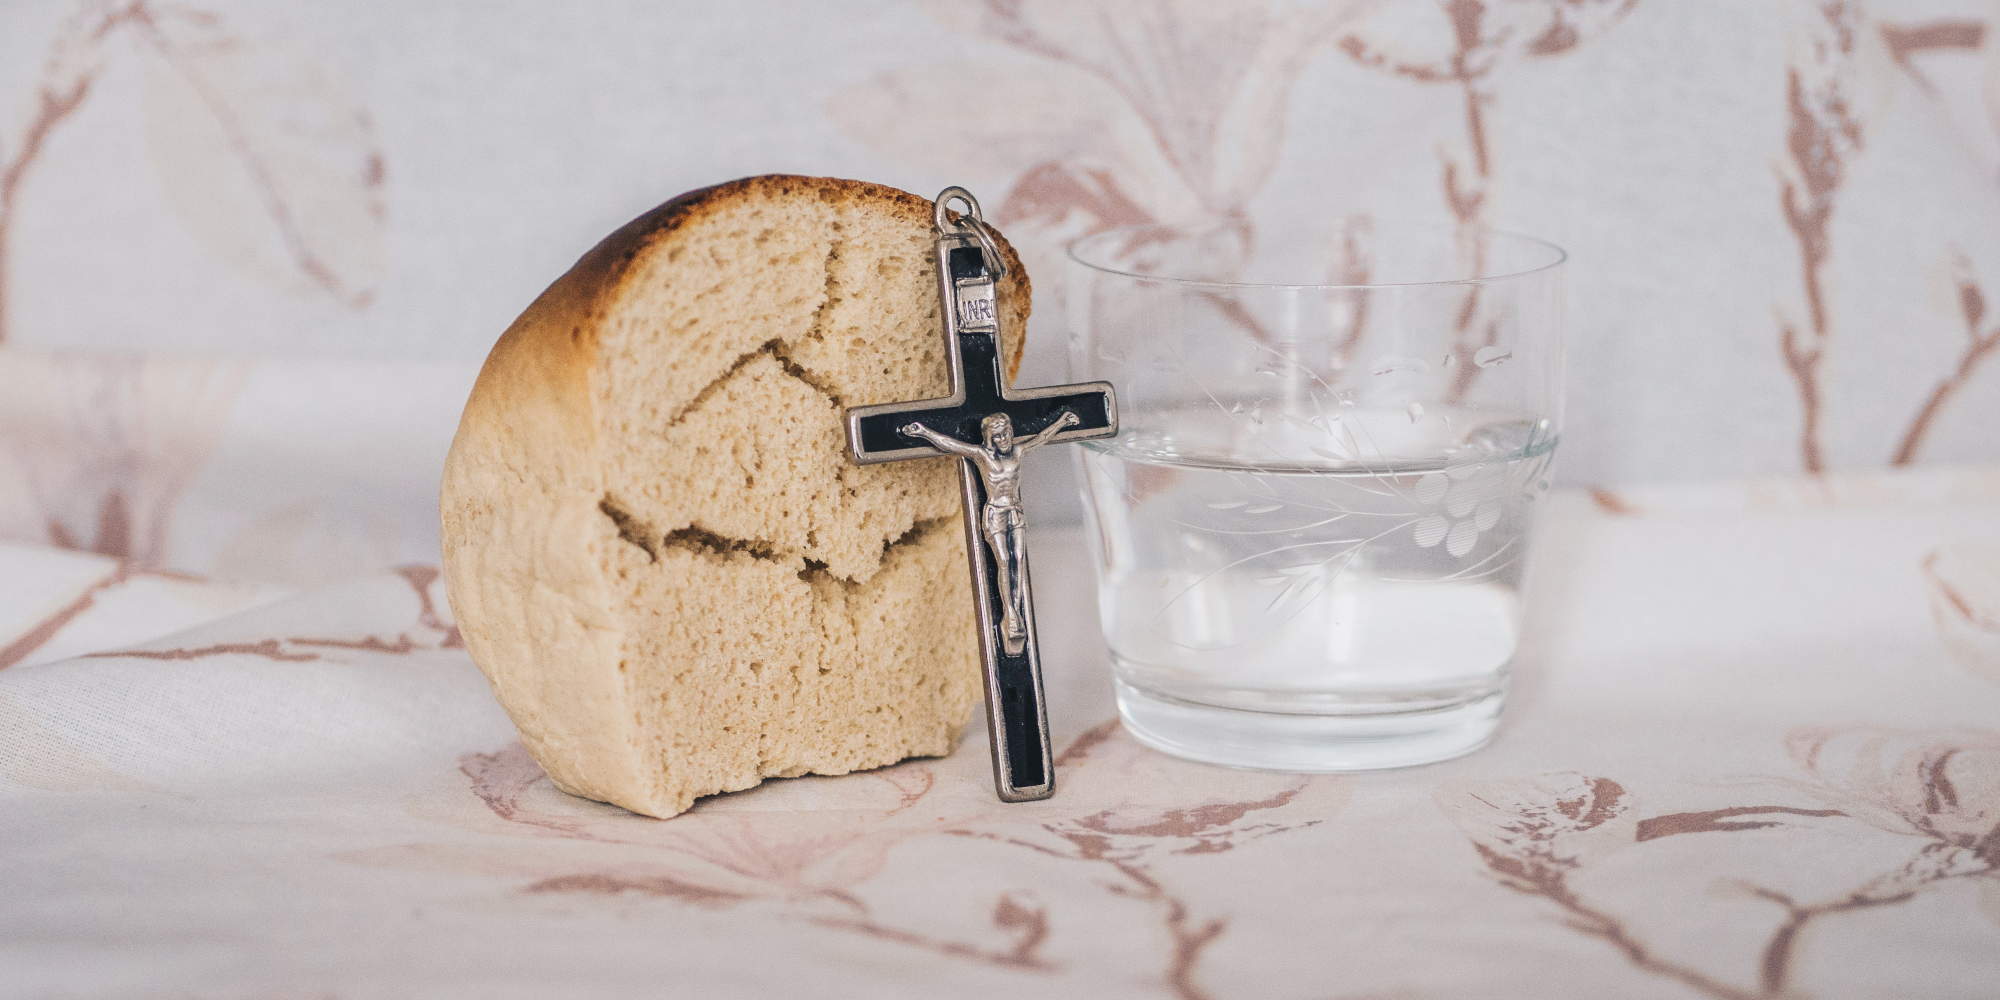 Η Σαρακοστή είναι περίοδος για νηστεία. Ψωμί και σταυρός πλάι σε ποτήρι νερό